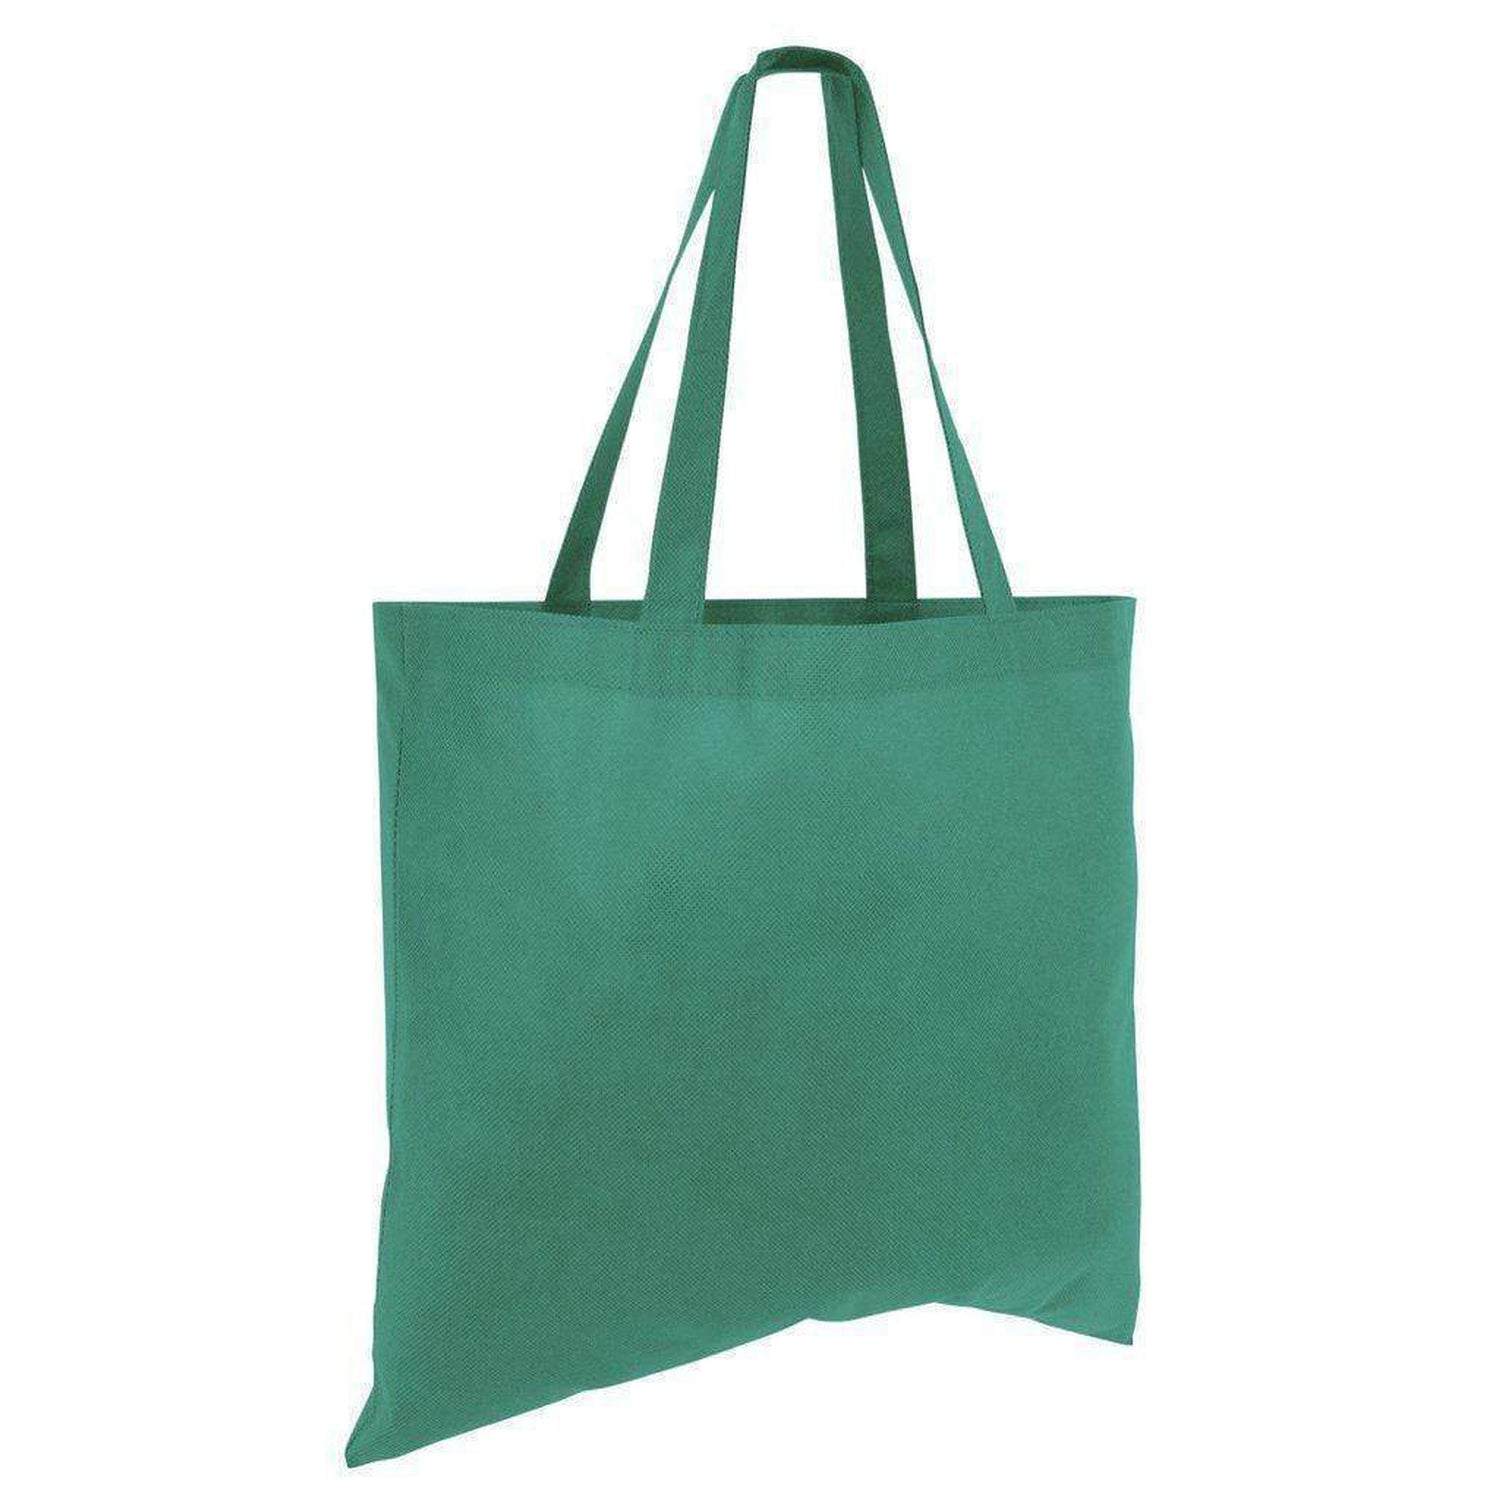 Woven Polypropylene Bags For Sale : Economical Non-Woven Polypropylene ...